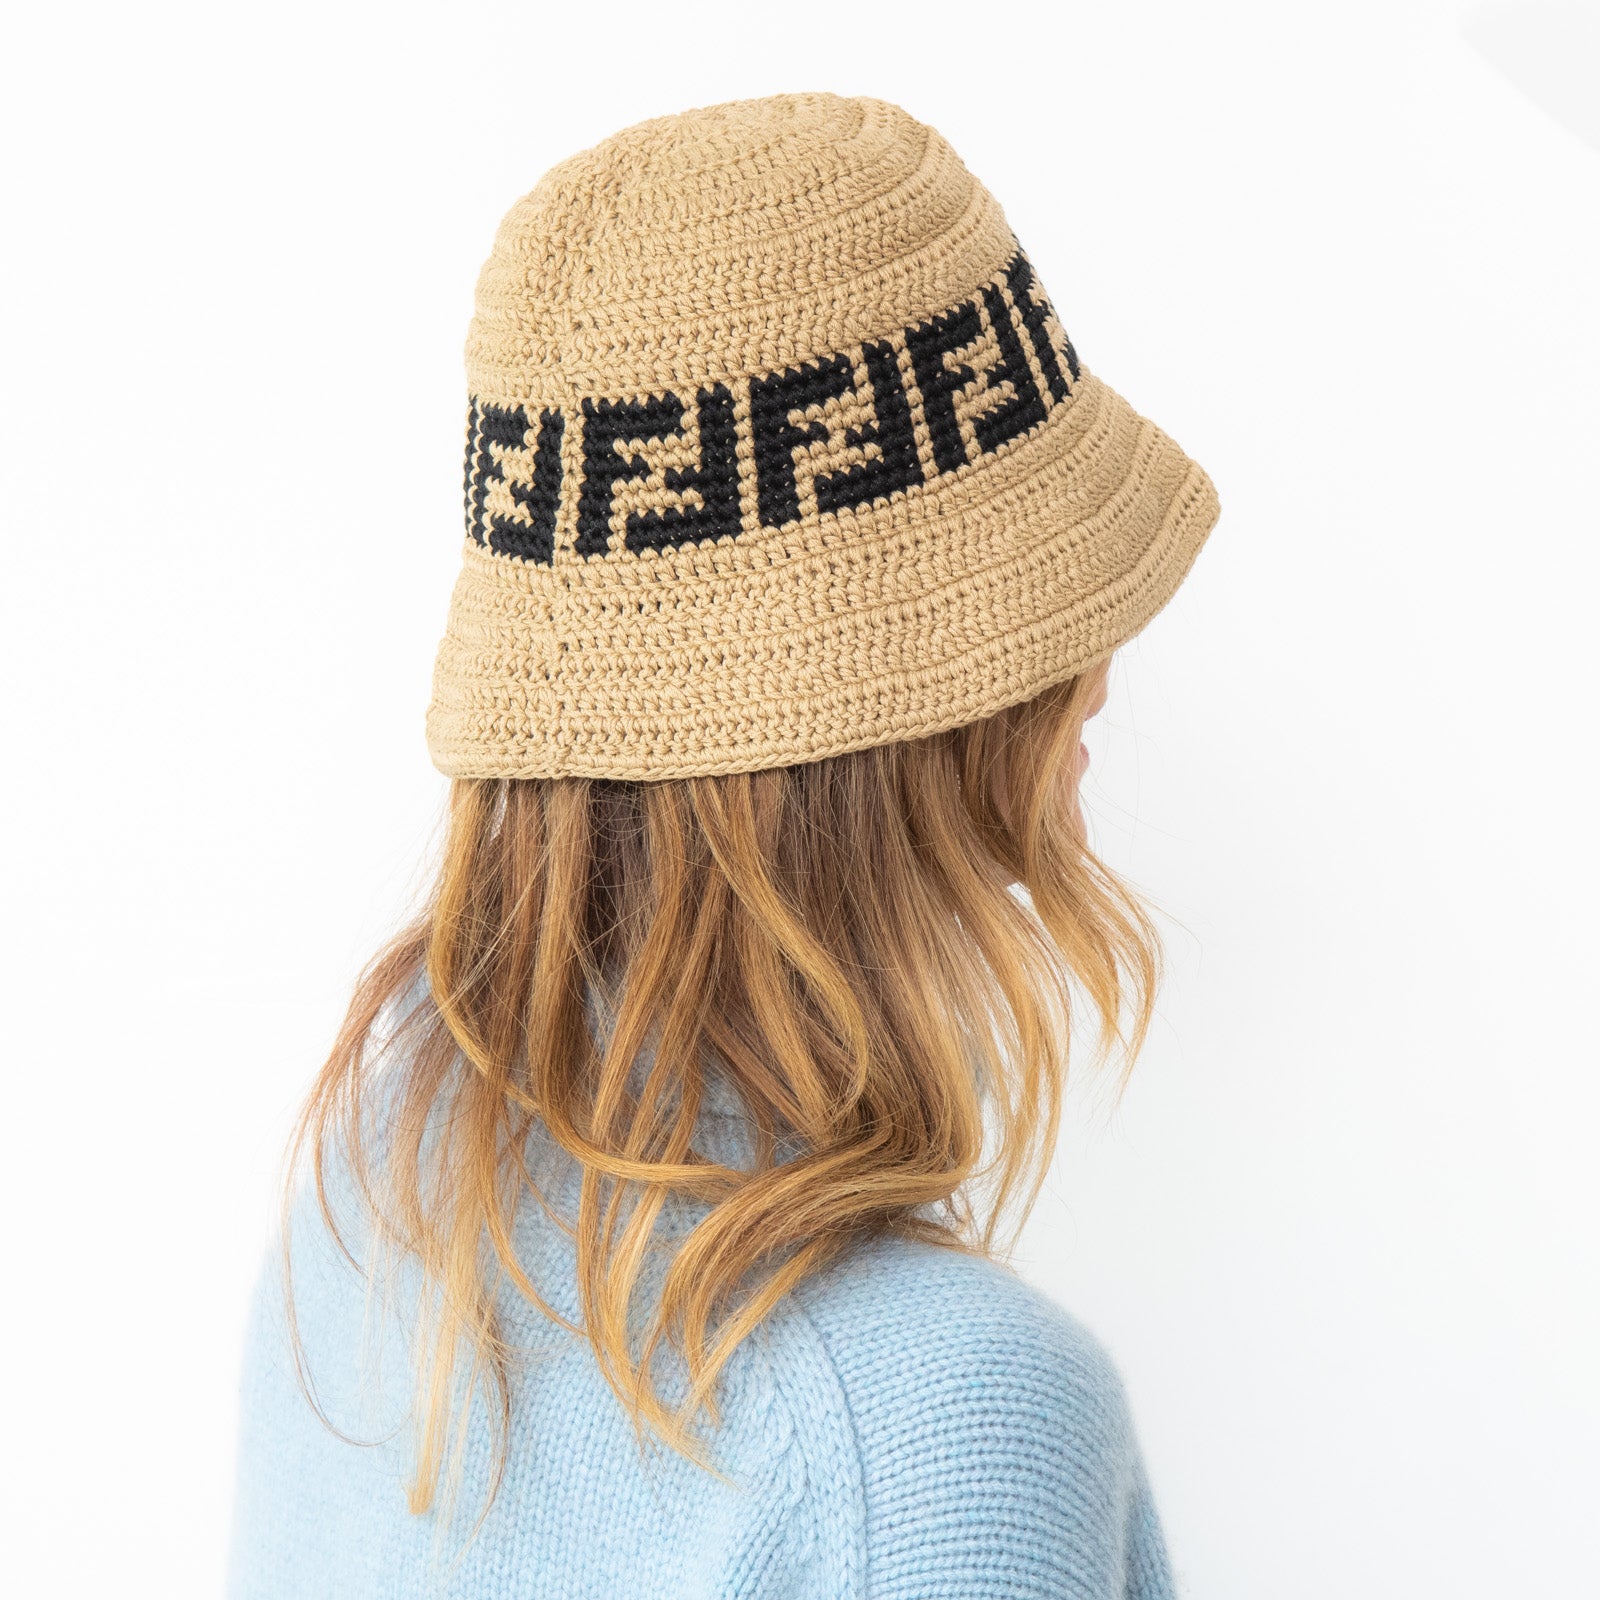 Fendi Crochet Bucket Hat - Image 4 of 4